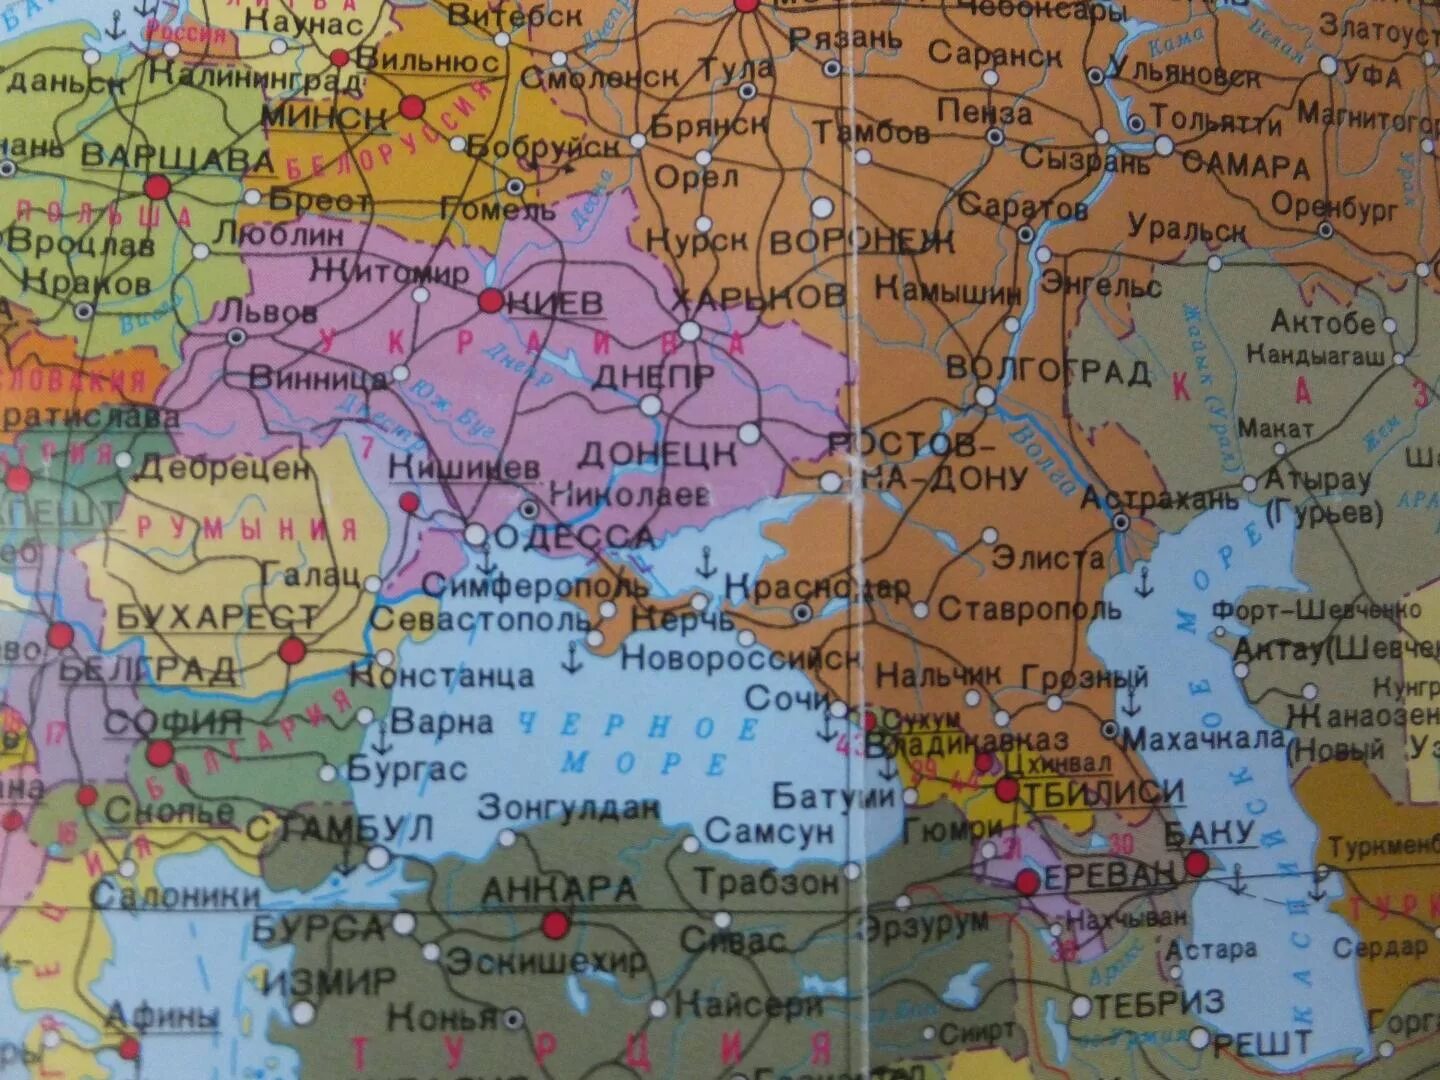 Карта западной границы россии с украиной. Крым на карте Европы. Крым на политической карте. Карта Крыма и Украины и России.